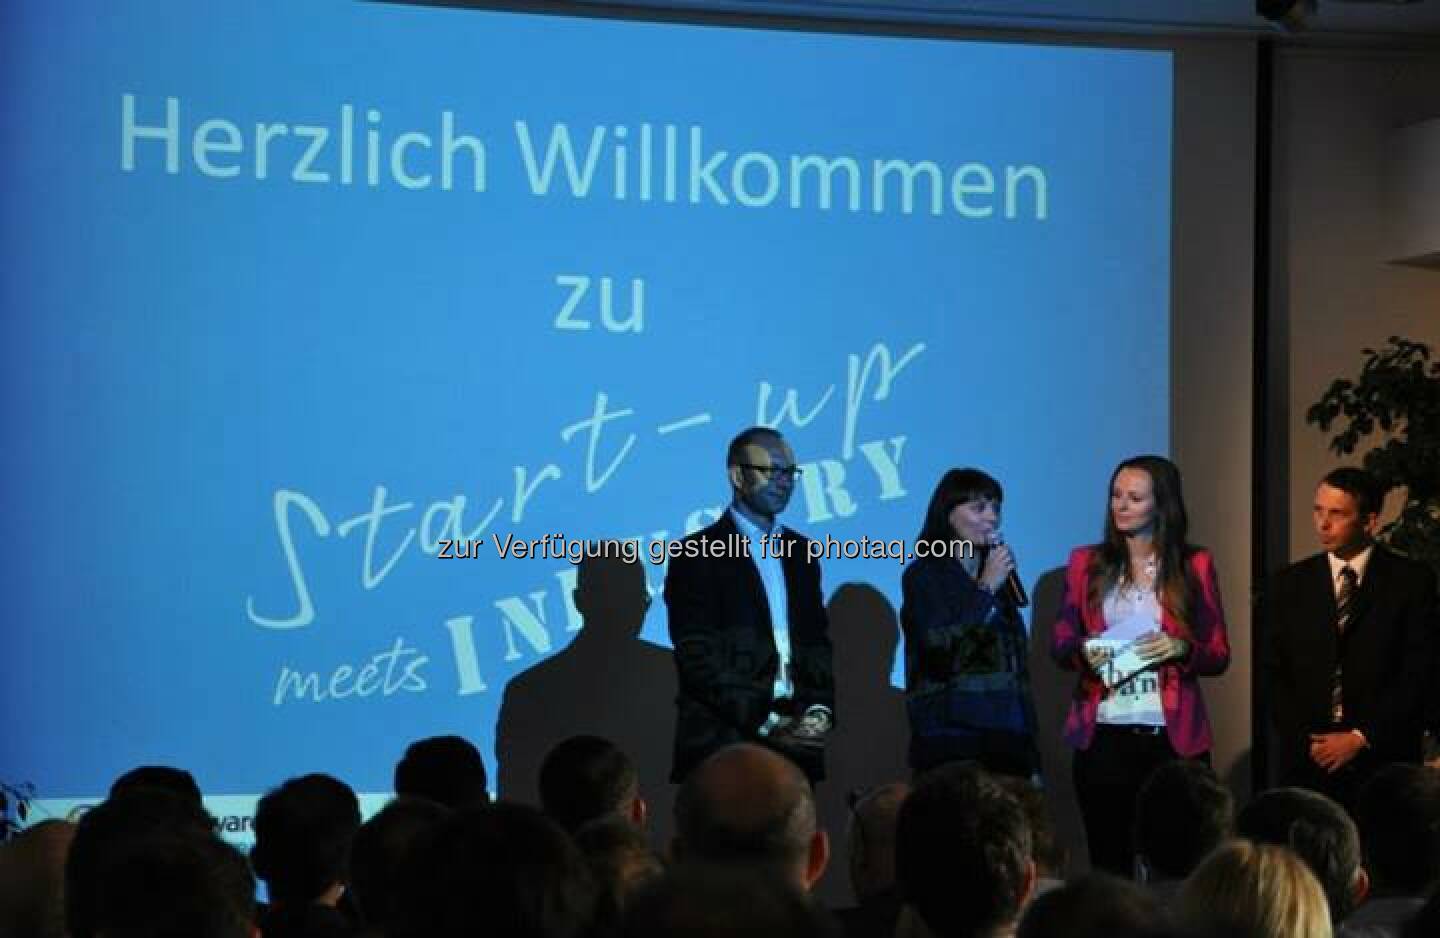 Herzlich willkommen zu Startup meets Industry (Bild: Akostart)